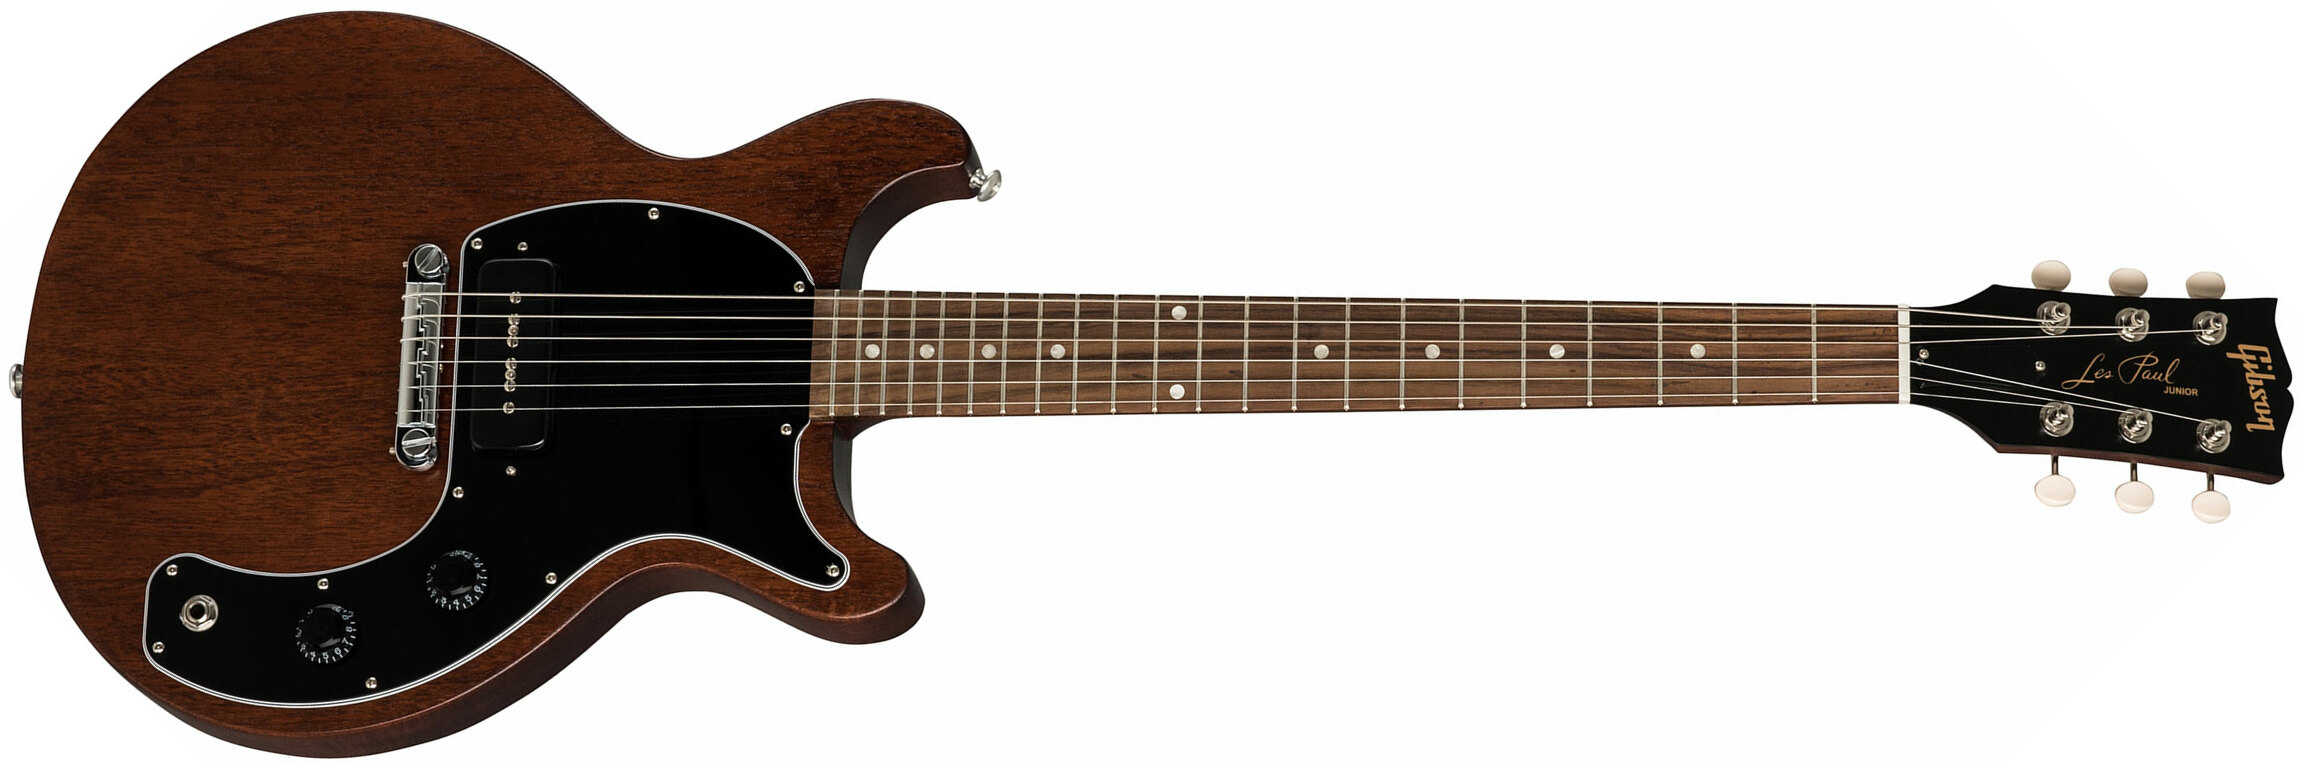 Gibson Les Paul Junior Tribute 2019 P90 Ht Rw - Worn Brown - Guitarra eléctrica de corte único. - Main picture